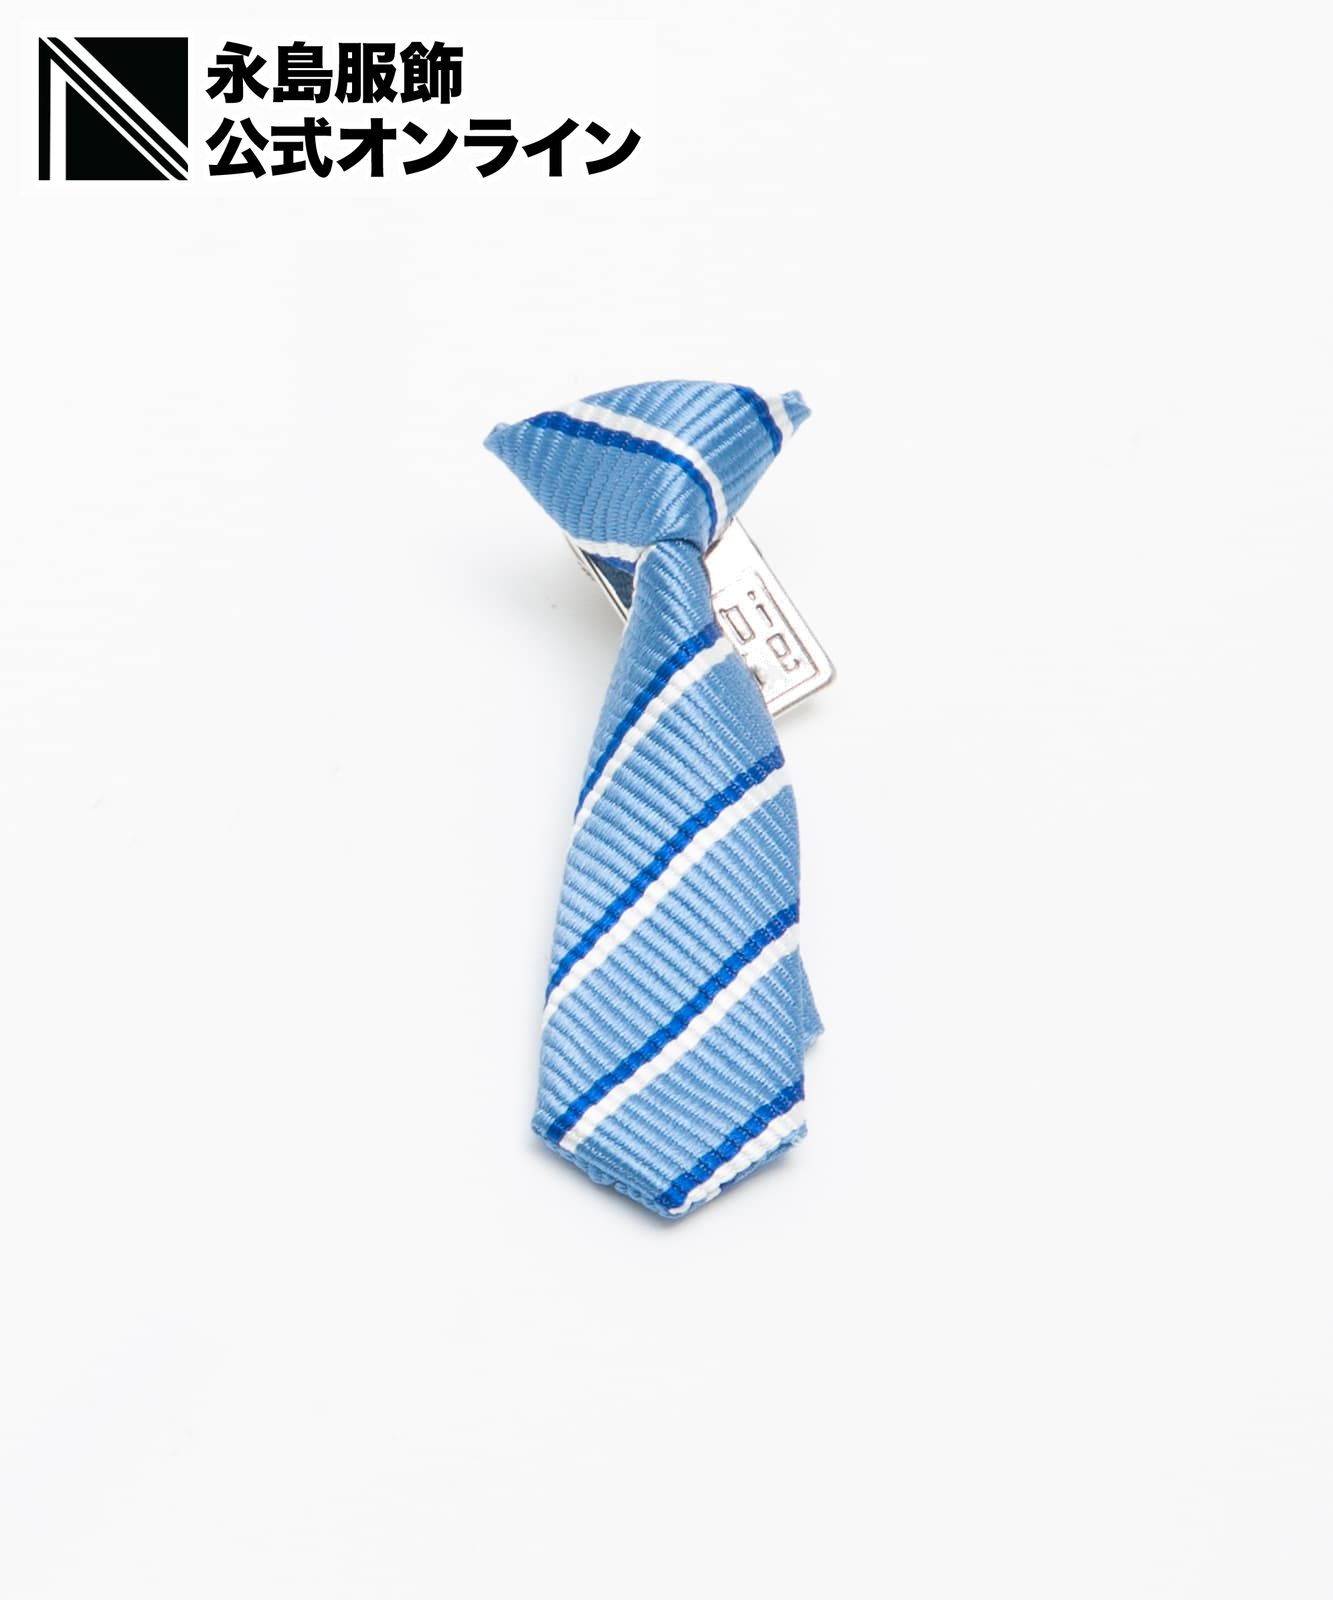 っているショップをご 永島服飾 ネクタイ と ラペルブローチ - 小物